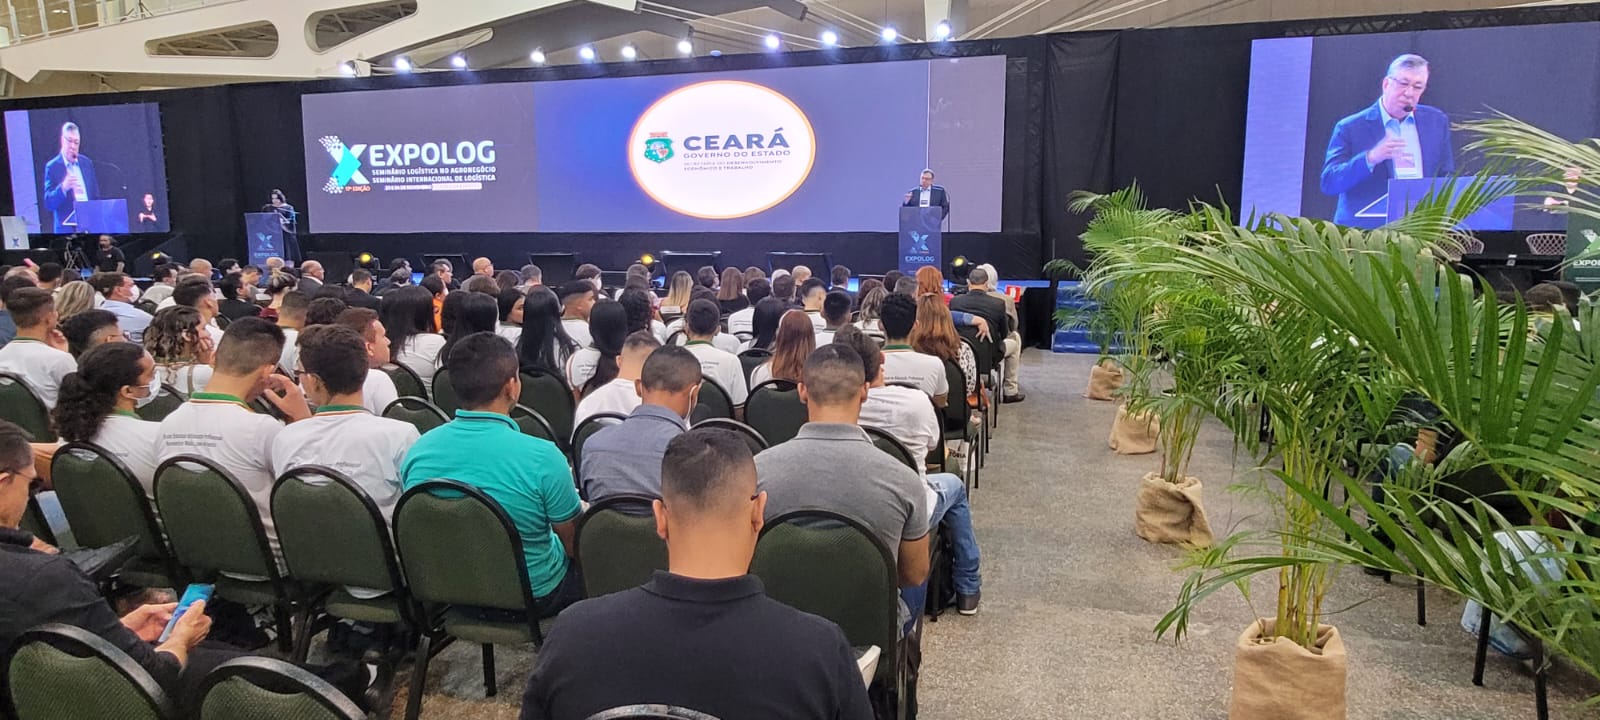 17ª edição da Expolog reúne principais players do setor de logística, em Fortaleza